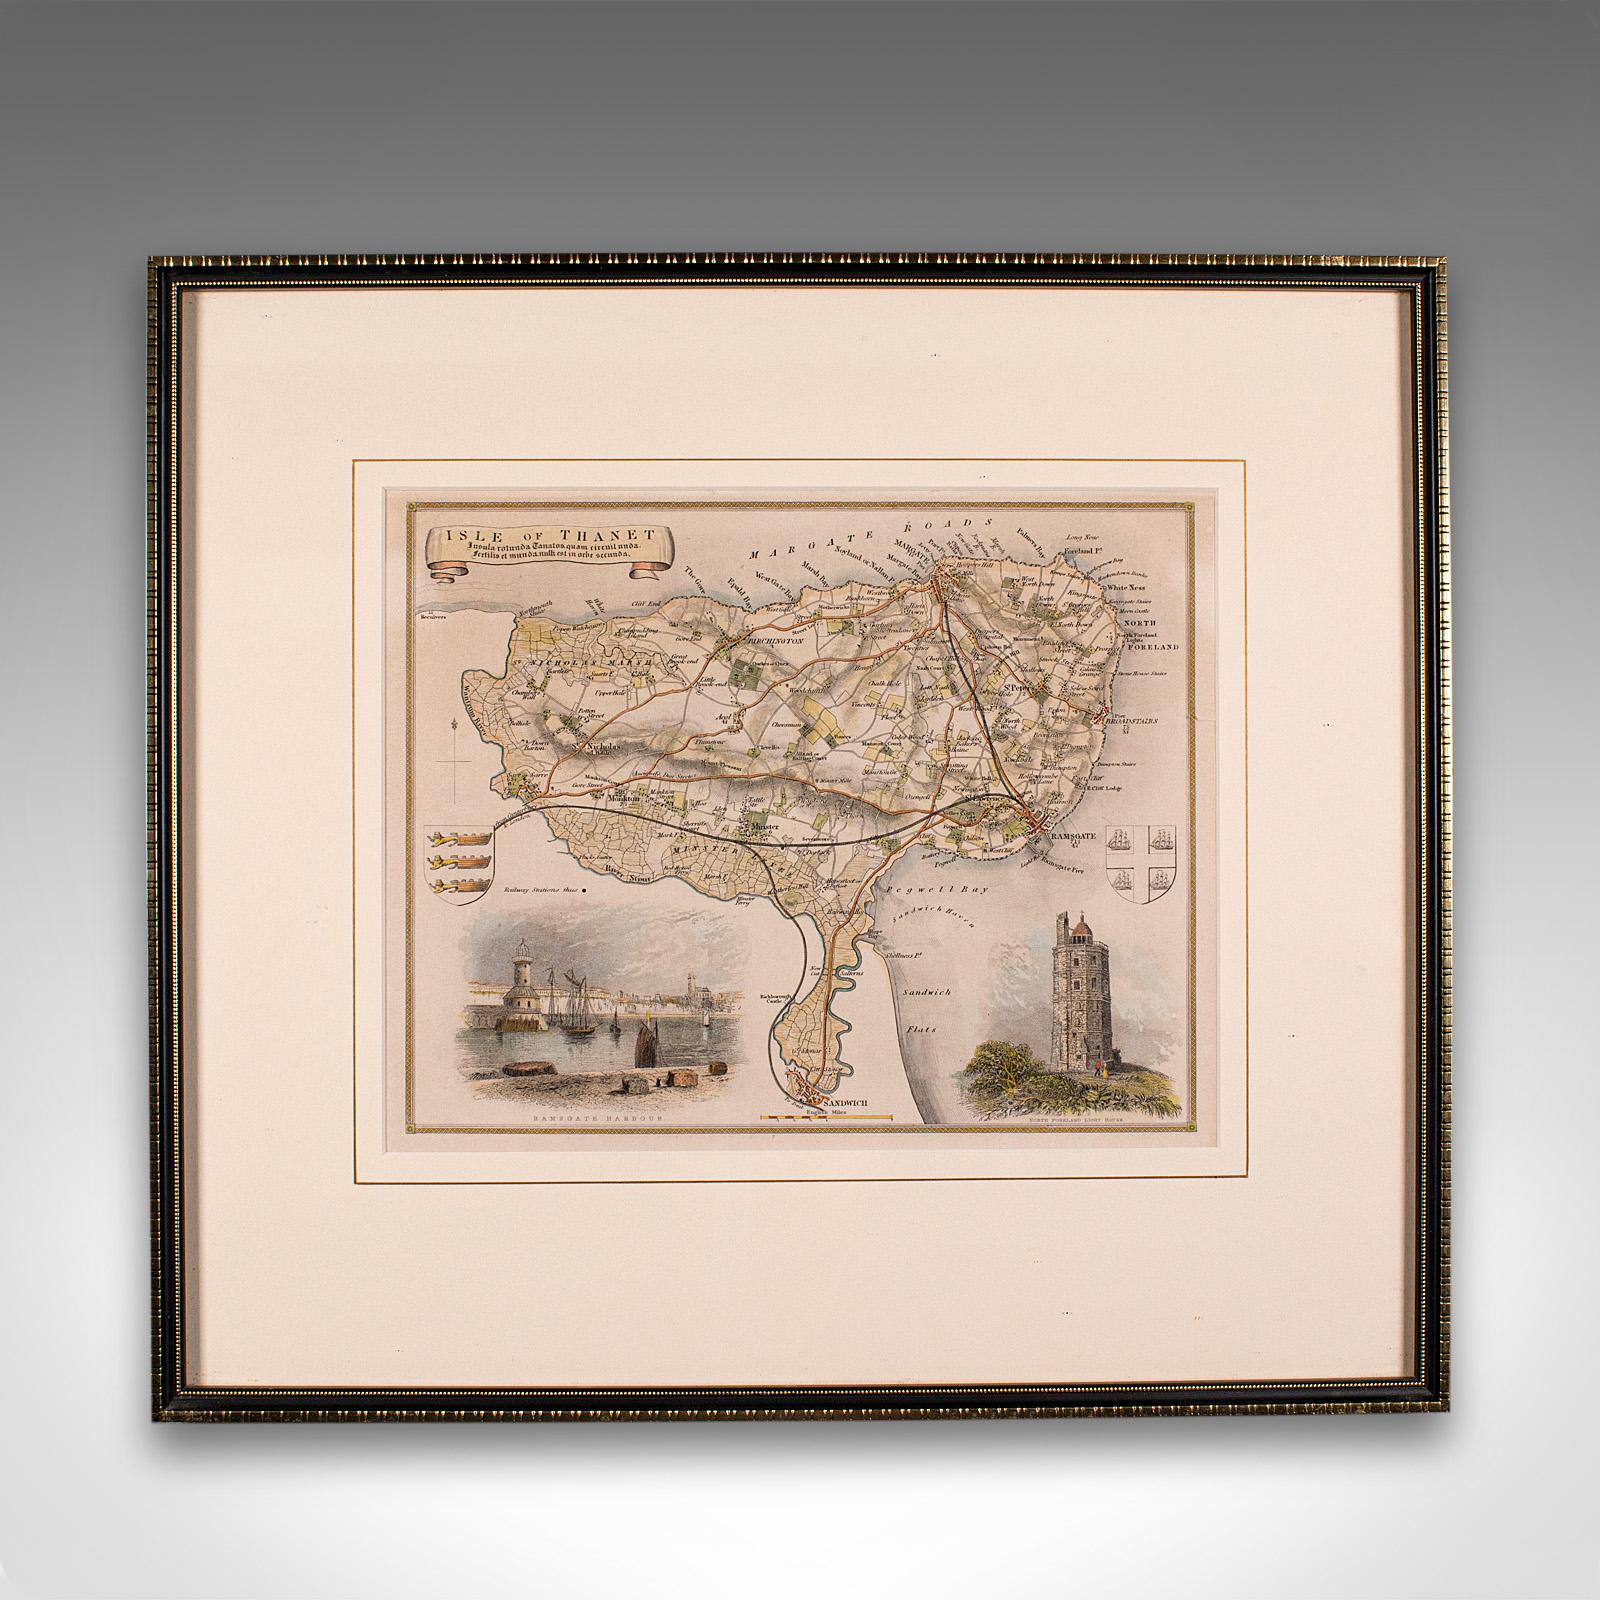 Dies ist eine antike lithographische Karte der Isle of Thanet in Kent. Ein englischer, gerahmter Atlasstich von kartografischem Interesse aus der Mitte des 19. Jahrhunderts und später.

Hervorragende Lithografie der Region, die den östlichsten Teil